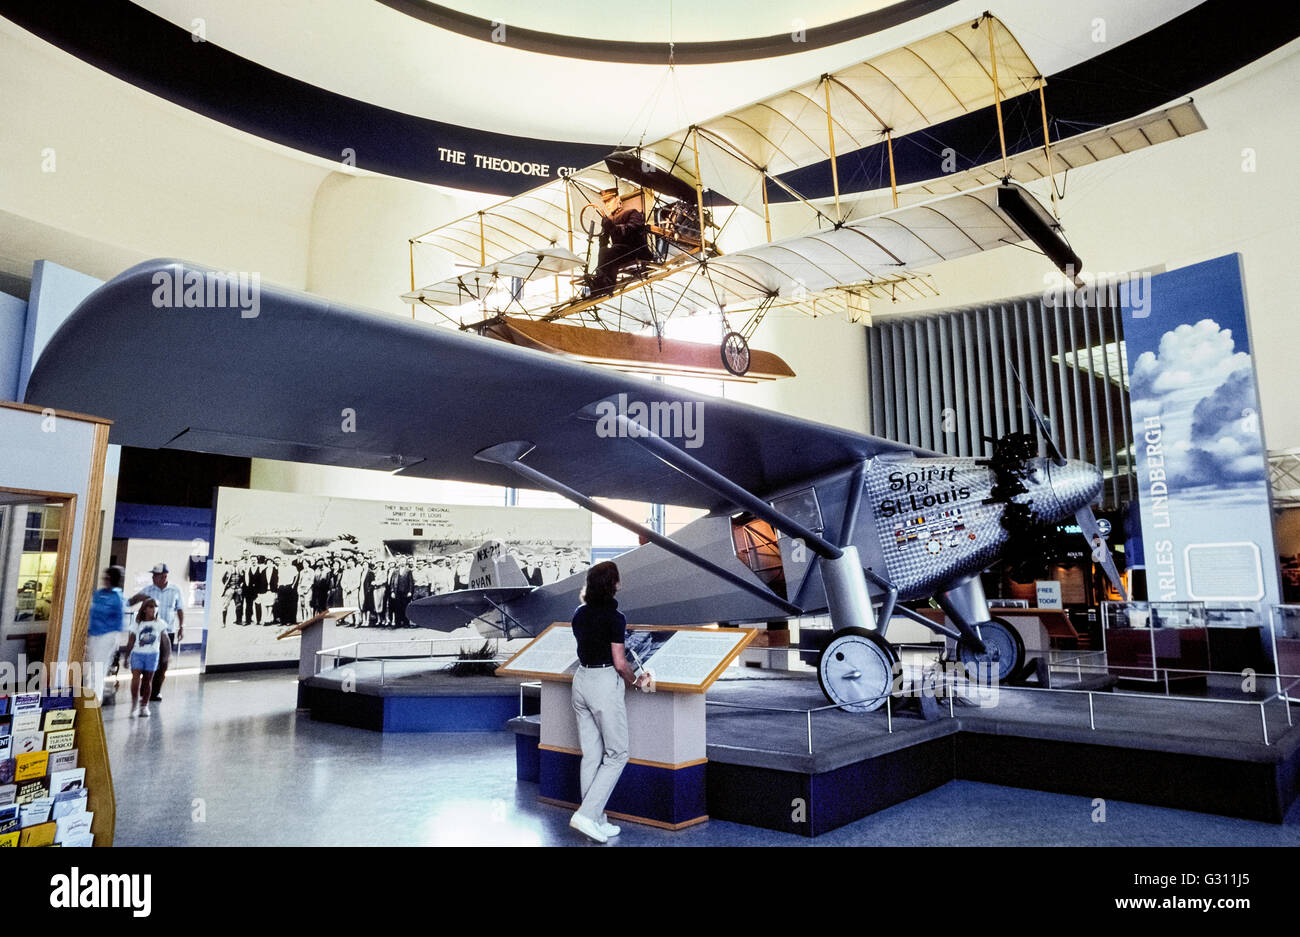 Una réplica de Charles A. Lindbergh es "espíritu de San Louis" avión que fue el primero en volar sin escalas desde Nueva York a París en 1927, es una gran atracción en el San Diego Air & Space Museum en San Diego, California, USA. Con el apoyo financiero de la ciudad de Missouri, tras lo cual fue nombrado, el monoplano fue diseñado, construido y probado en San Diego antes de tomar su vuelo histórico que tuvo 33-1/2 horas y Lindbergh ganó $25,000 en premios en dinero. Muestra sobre el "espíritu de San Louis" es una de las primeras aeronaves de ala. Foto de stock